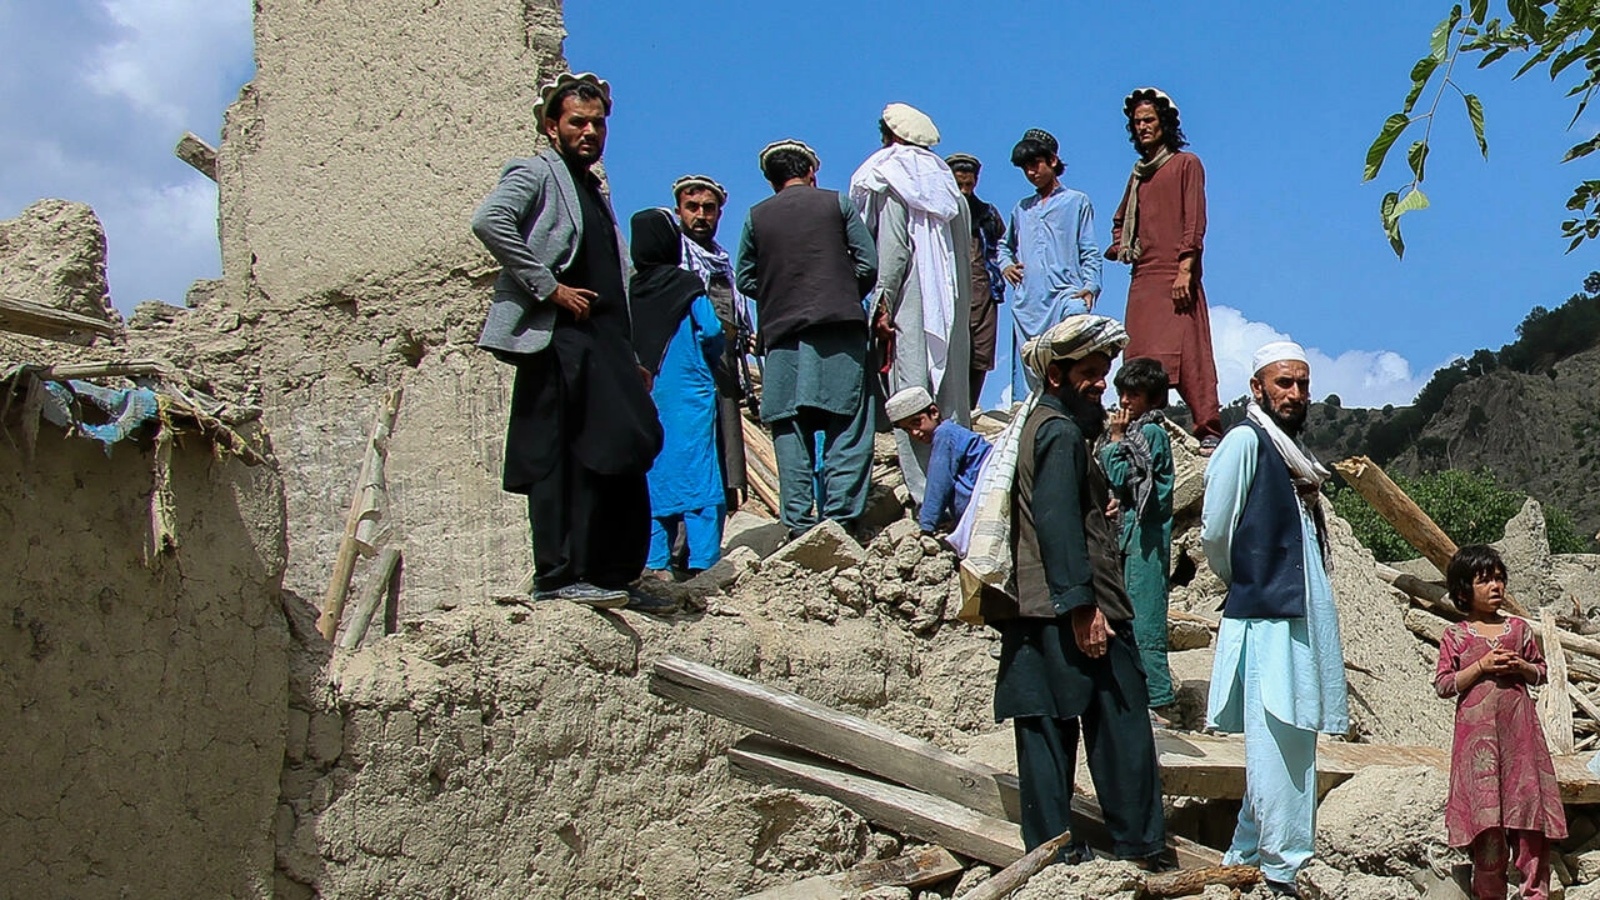 أفغان يقفون على أنقاض منزل دُمّر جراء الزلزال في منطقة غايان في شرق أفغانستان في 24 يونيو 2022 